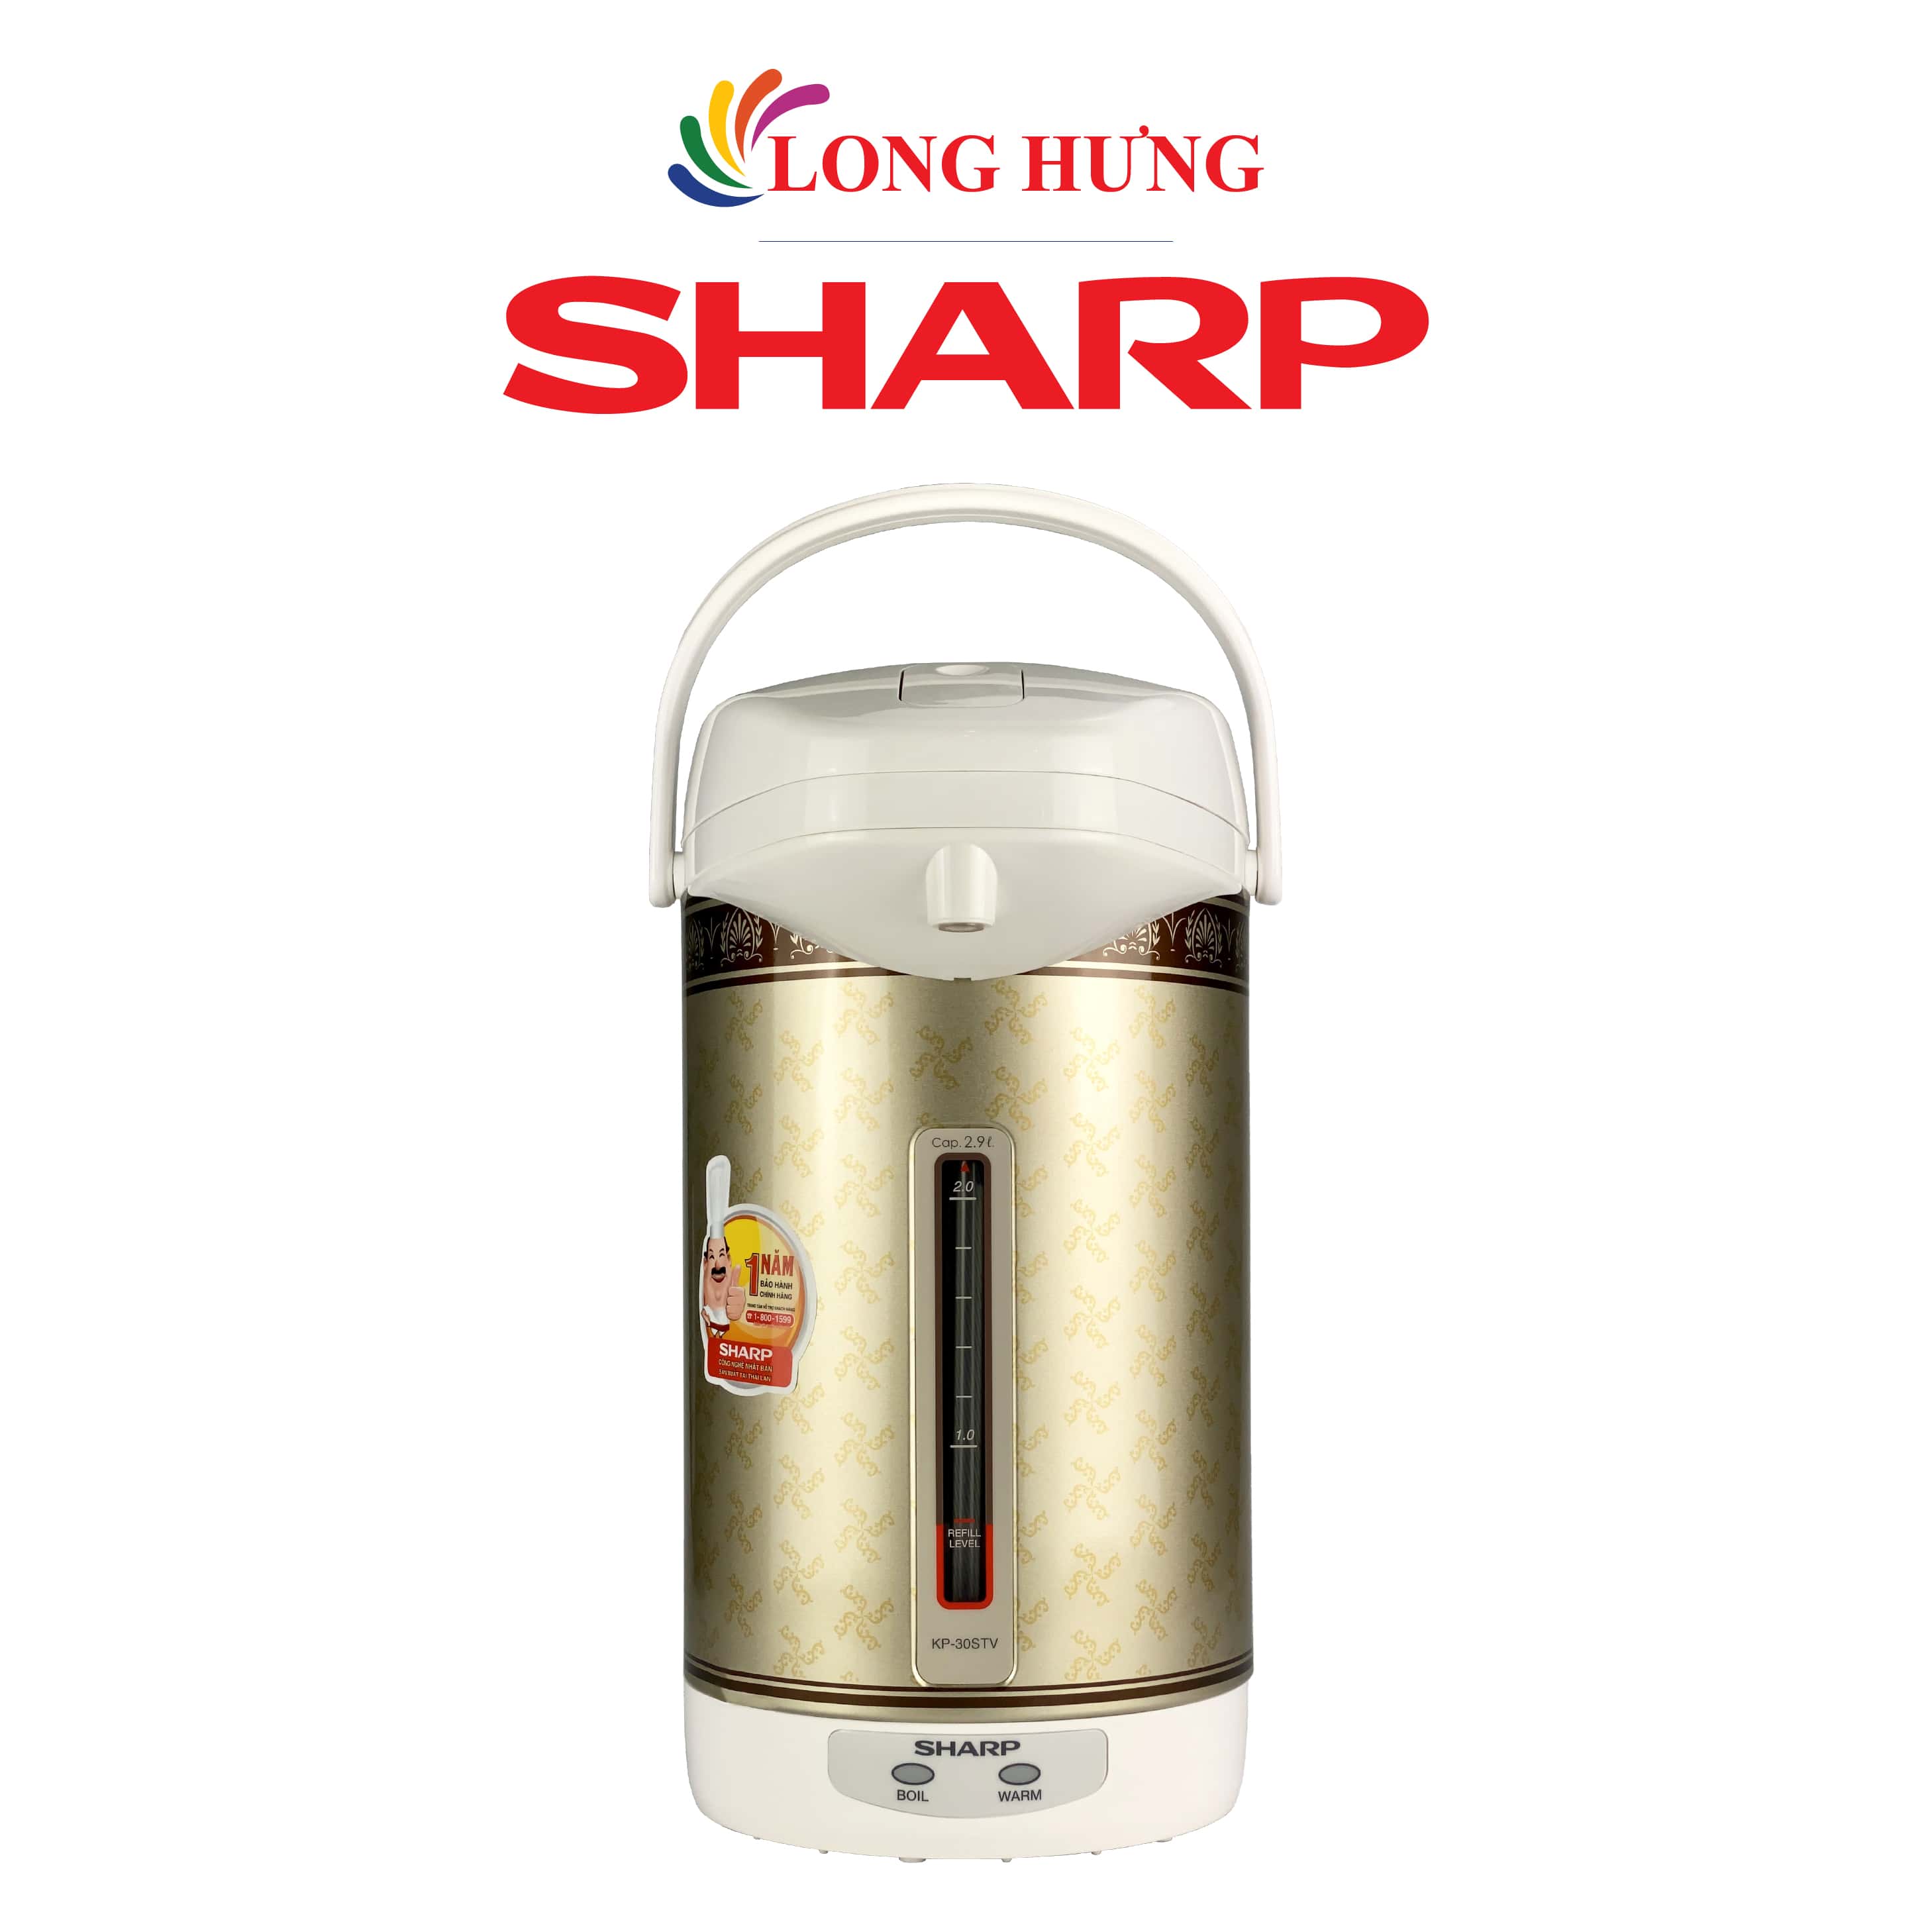 Bình thủy điện Sharp 2.9 lít KP-30STV - Hàng chính hãng - Thiết kế nhỏ gọn, Dung tích 2.9 lít, Công suất 670W